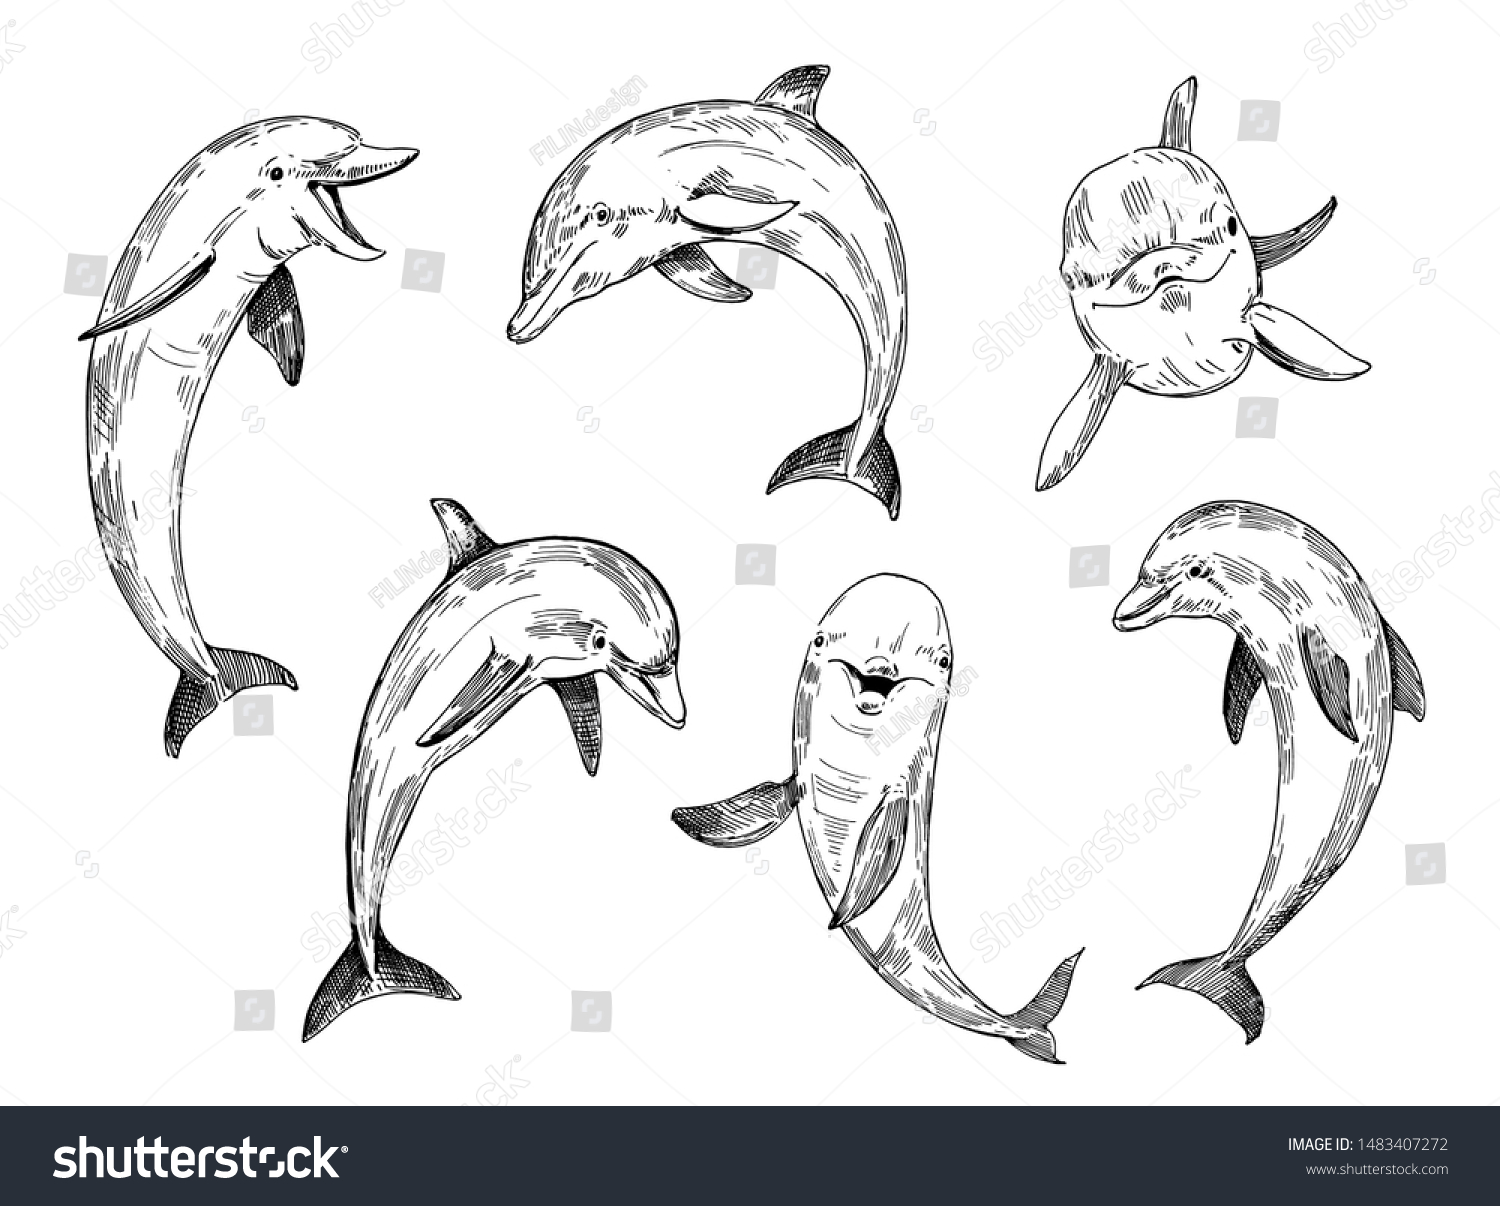 Дельфин рисунок скетч